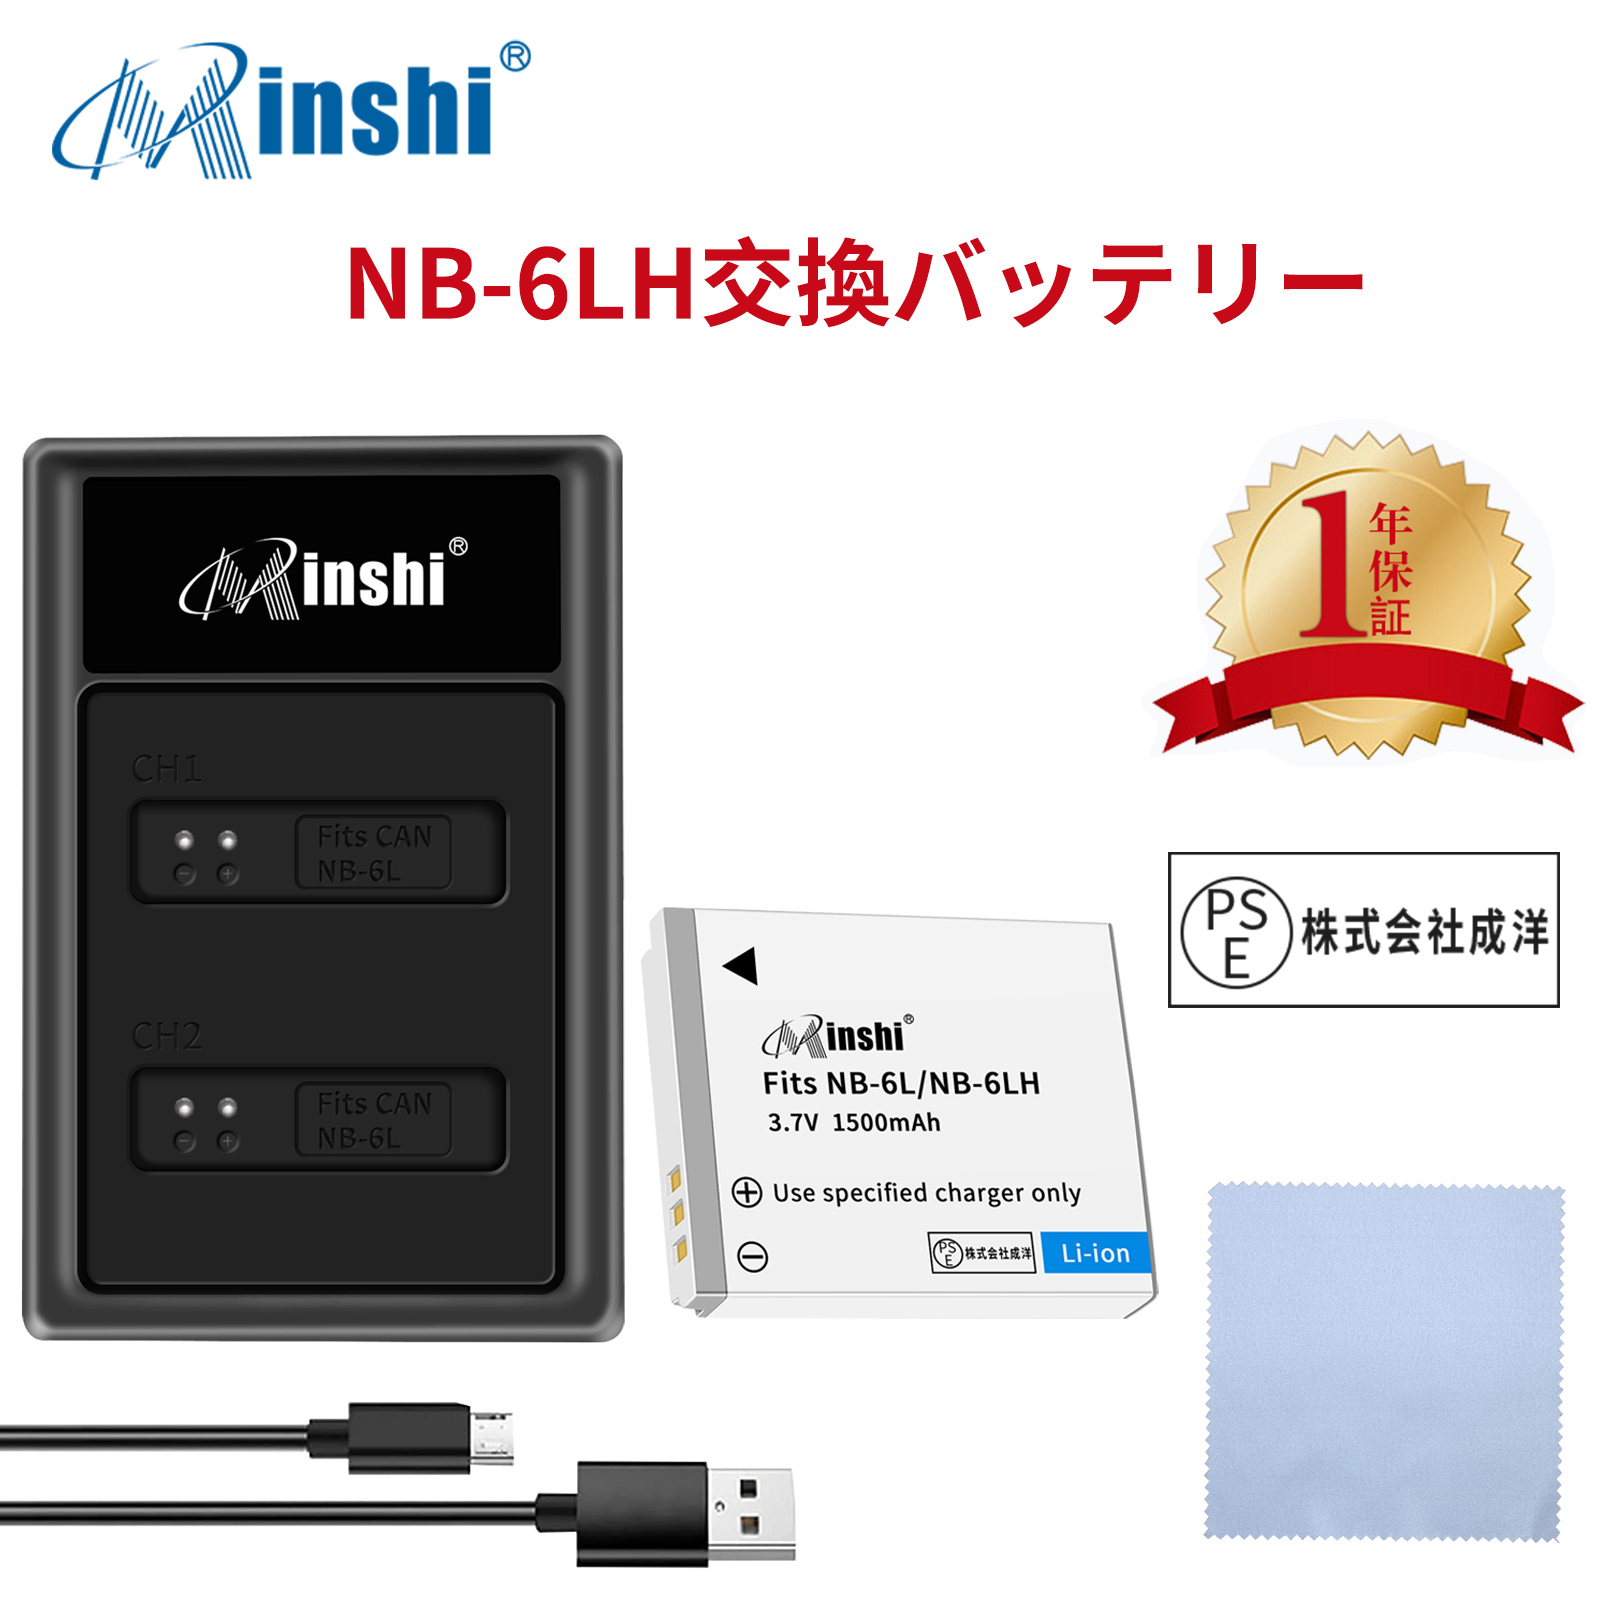 【セット】minshi Canon IXUS 200 IS NB-6L【1500mAh 3.7V】PSE認定済 高品質 NB-6LH 交換用バッテリー